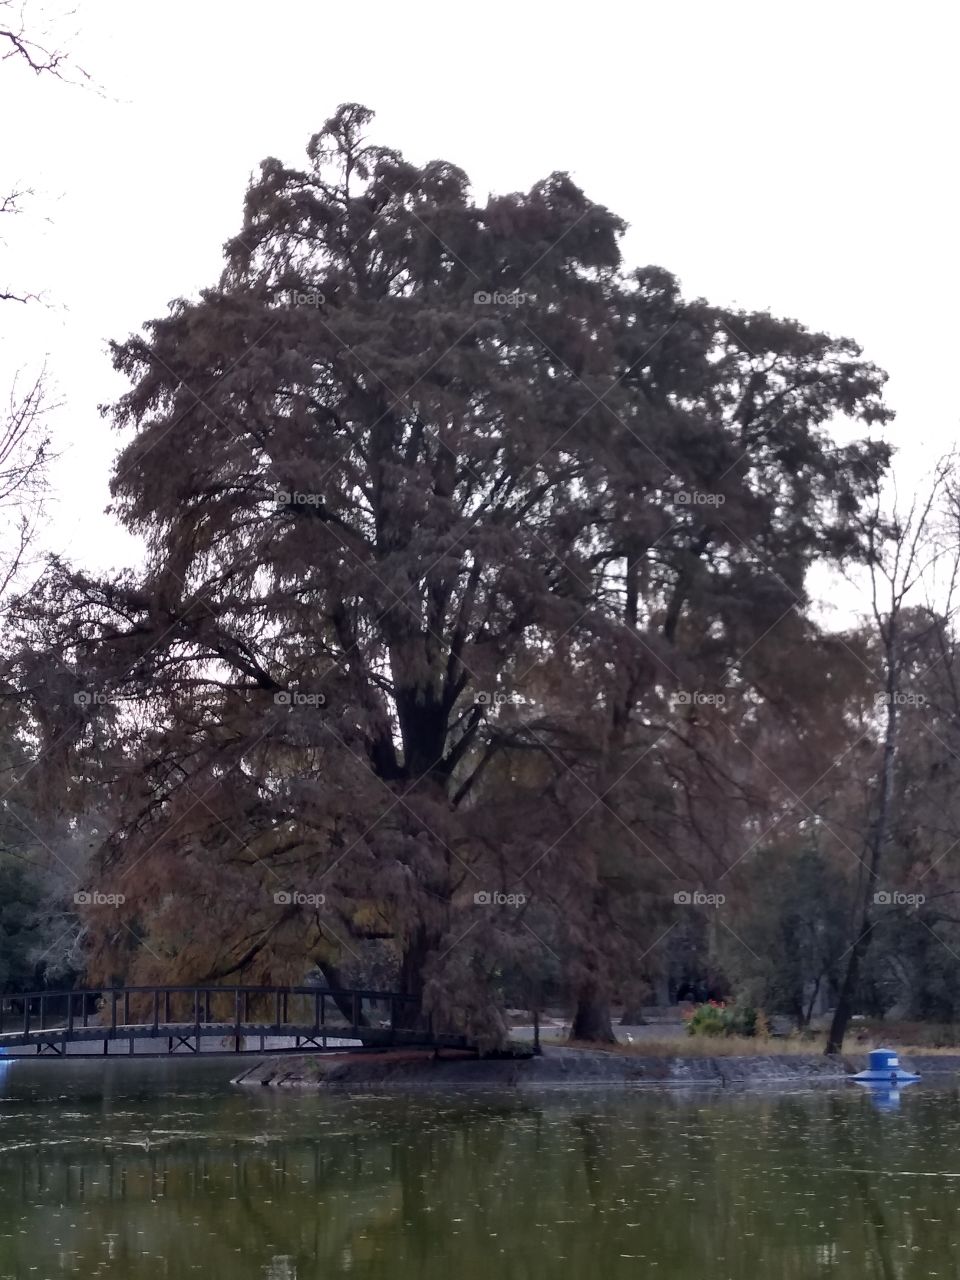 hermoso árbol a lado de una laguna.